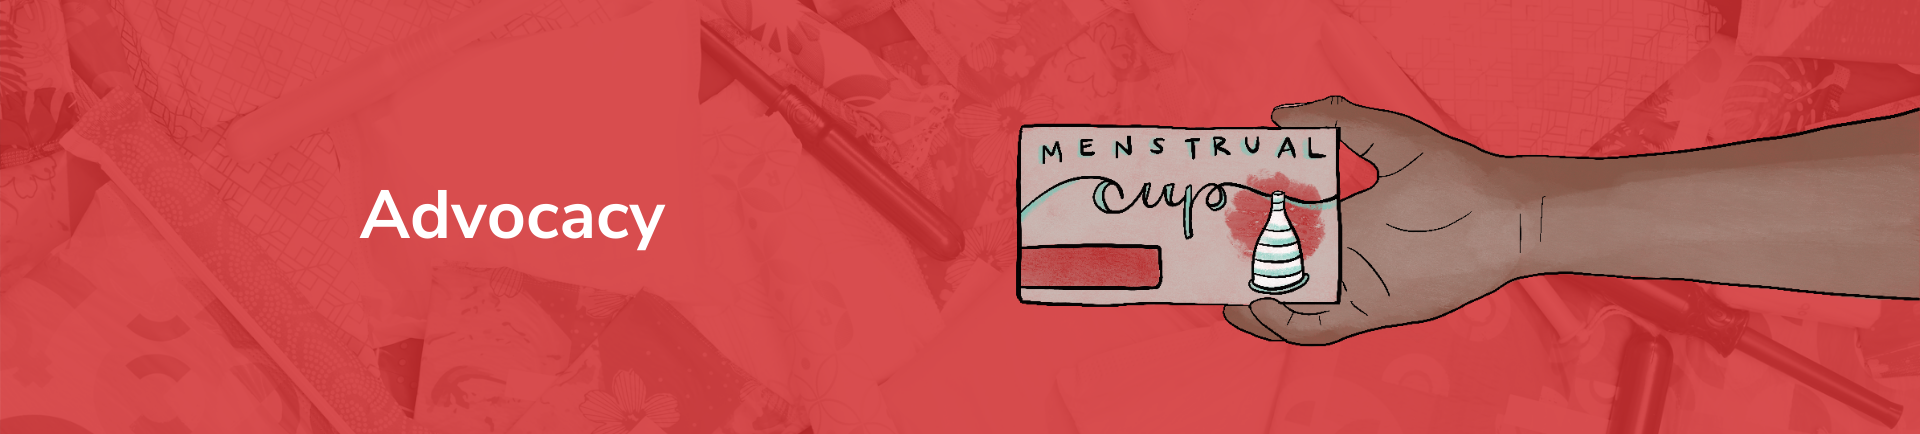 Advocacy | The Period Purse | Menstrual Movement